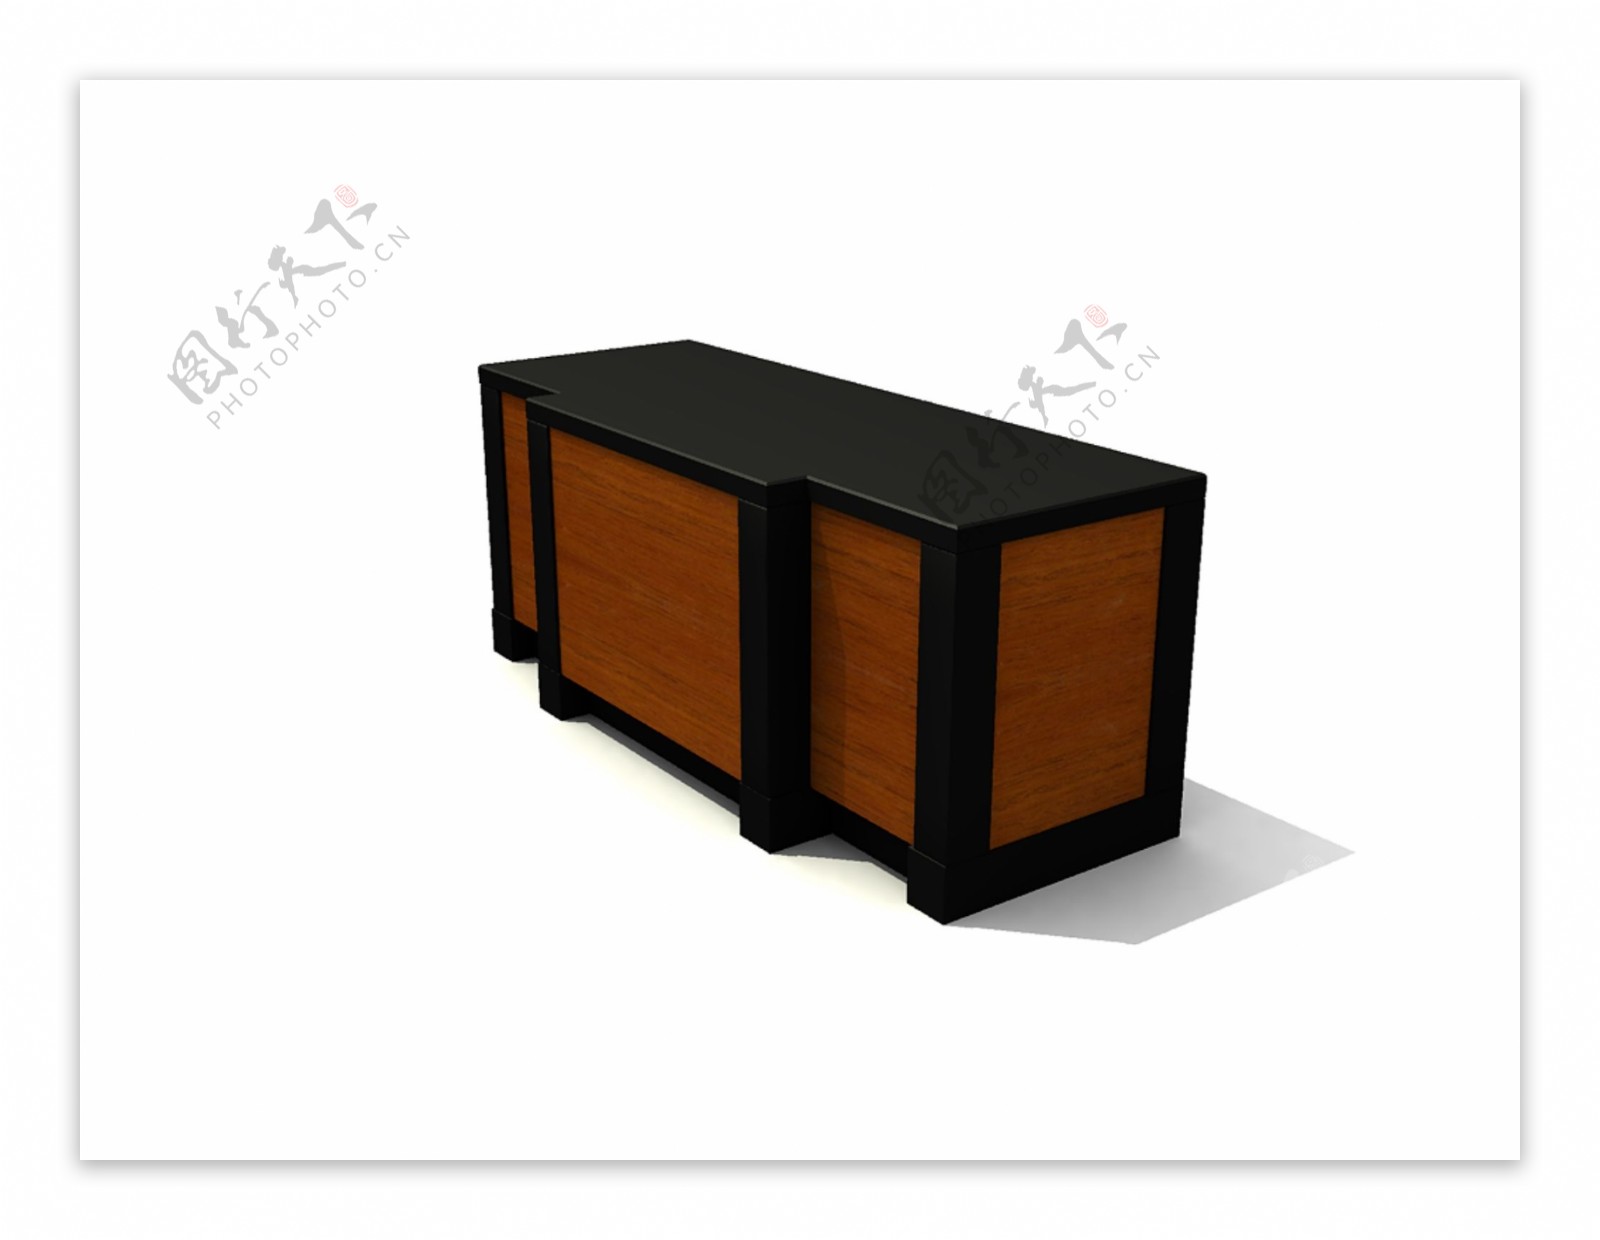 公装家具之桌子0093D模型